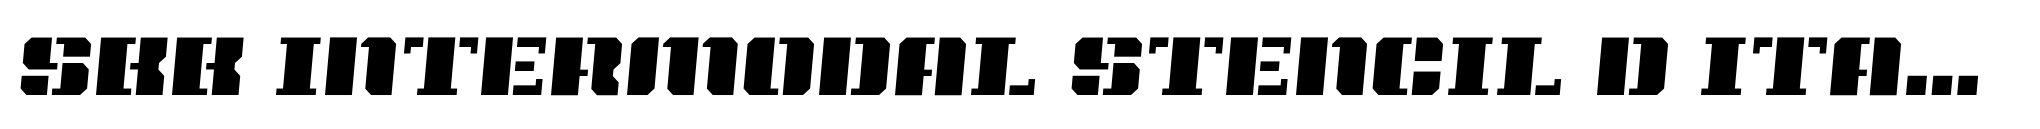 SbB Intermodal Stencil D Italic 5 image